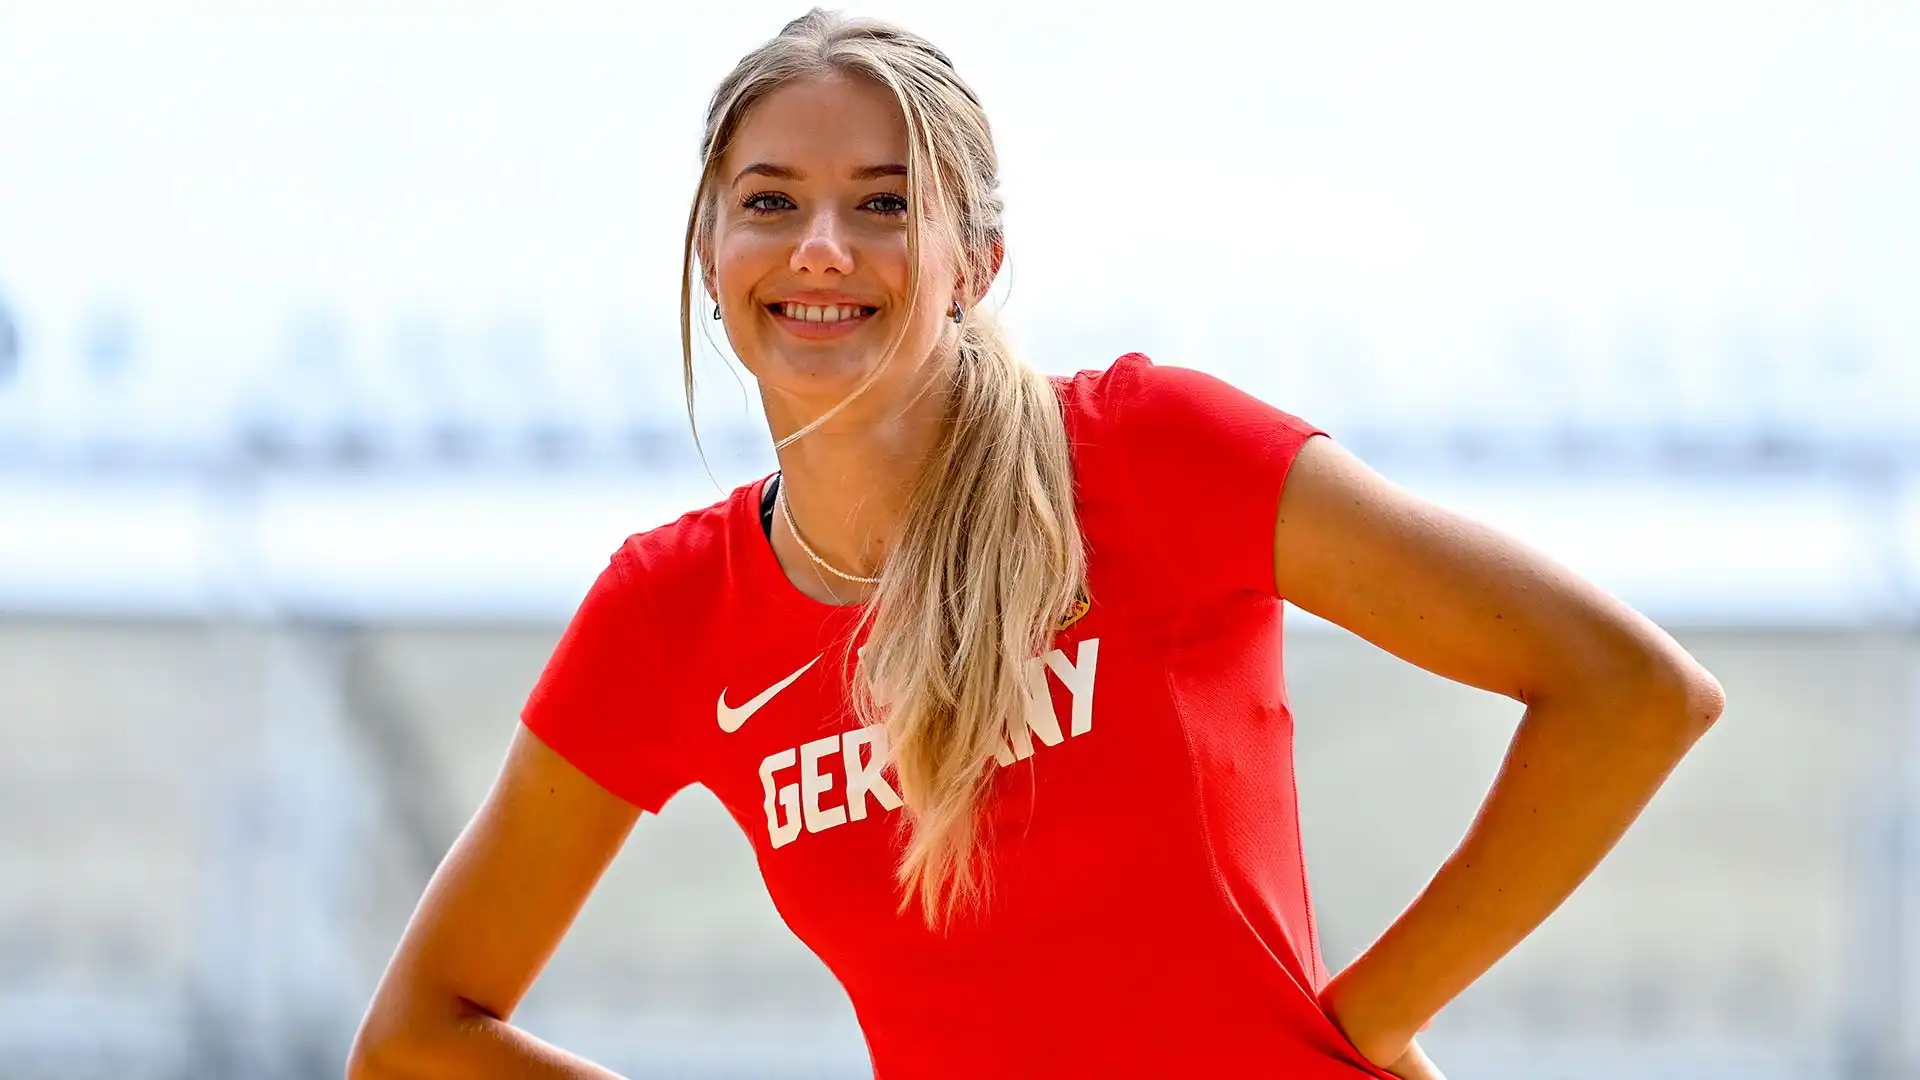 Alica Schmidt gareggerà alle Olimpiadi di Parigi 2024